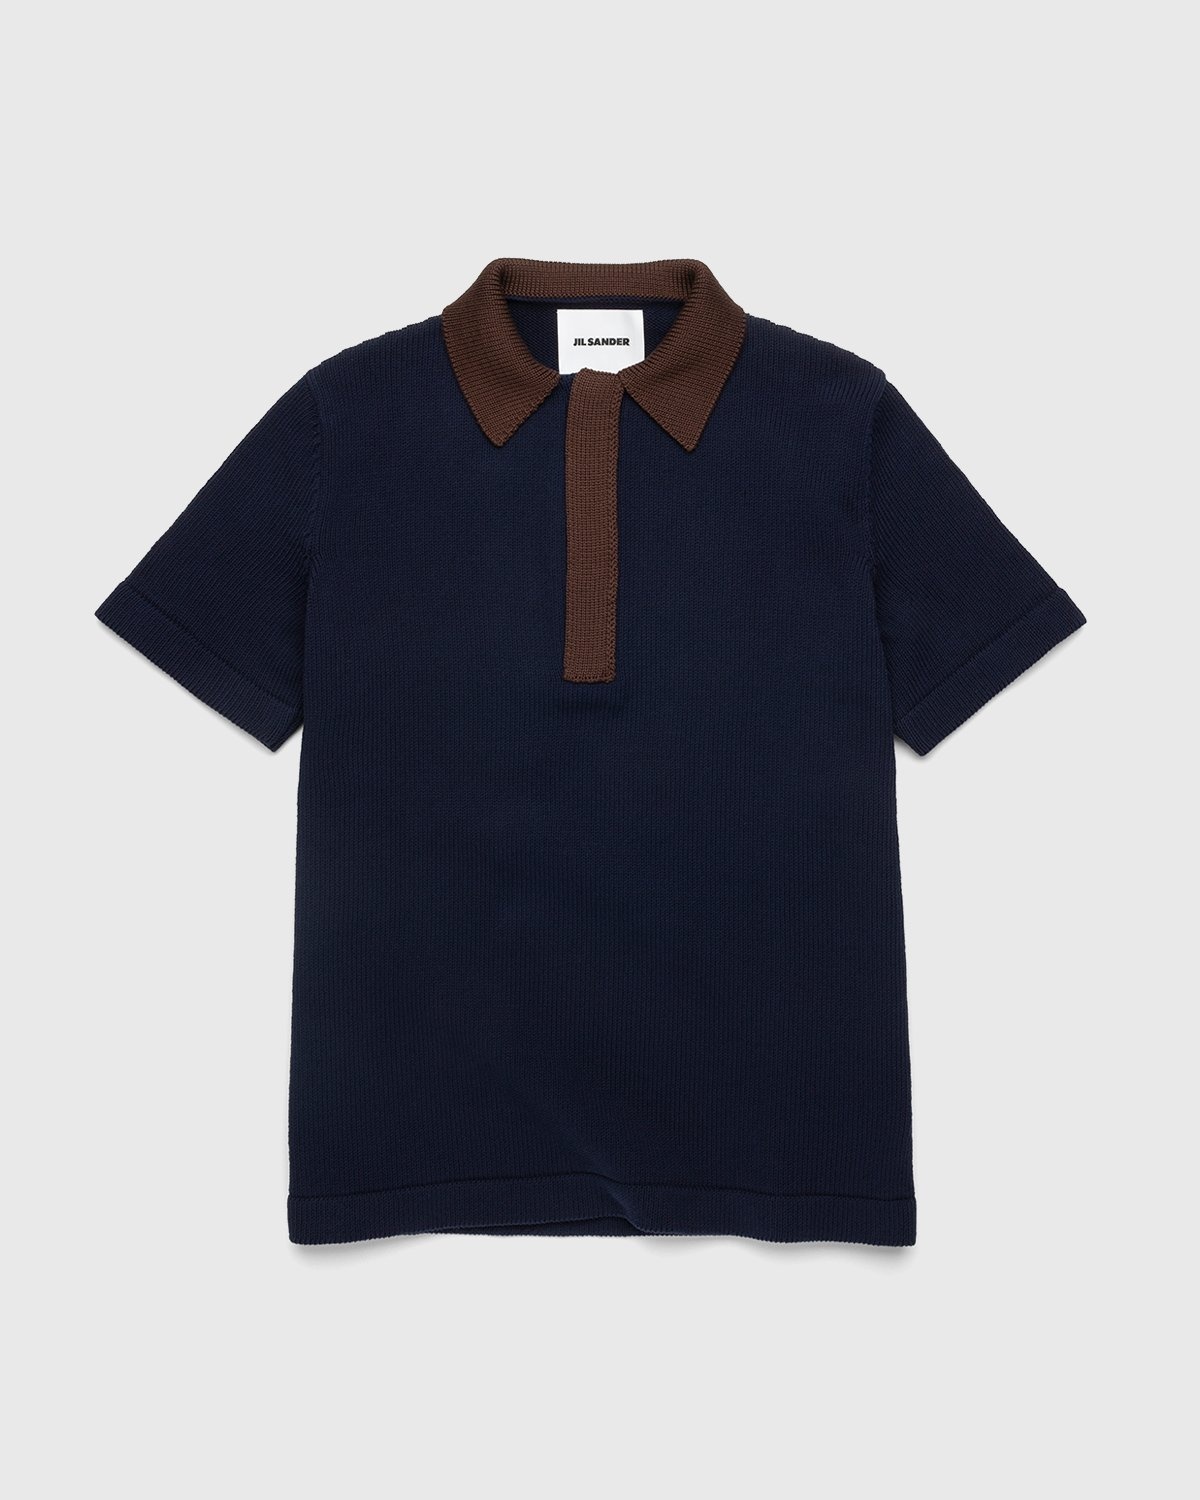 Jil Sander – Short Sleeve Knit Shirt Dark Blue - Shirts - Blue - Image 1